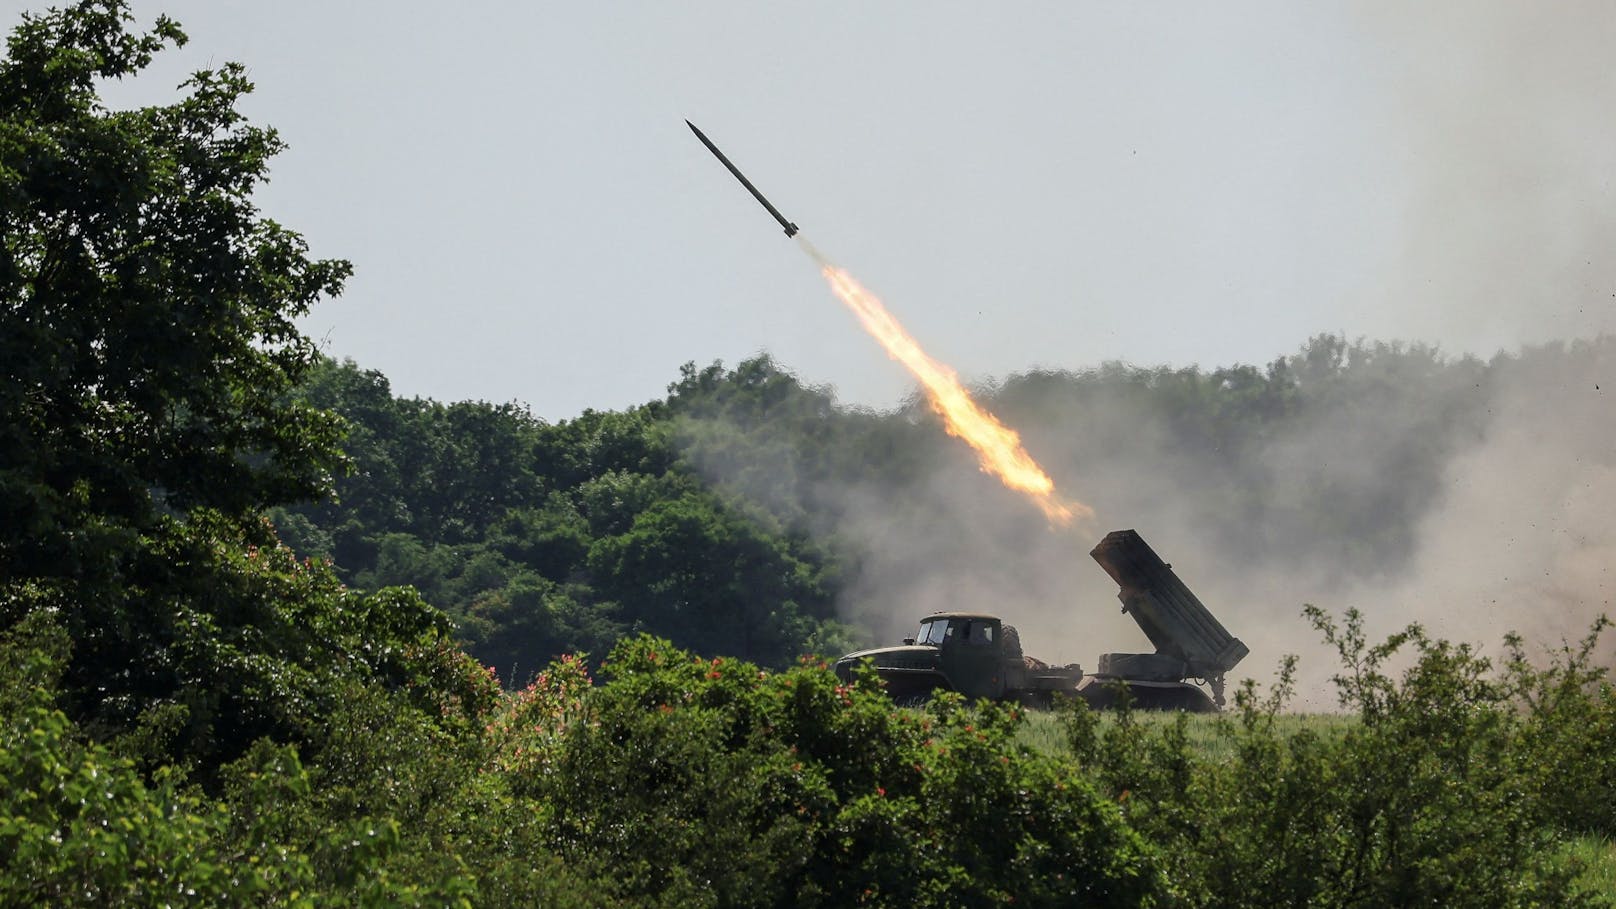 Ukrainer feuern einen BM-21 Grad Mehrfachraketenwerfer nahe&nbsp;Lyssytschansk ab. Archivbild, 12. Juni 2022.